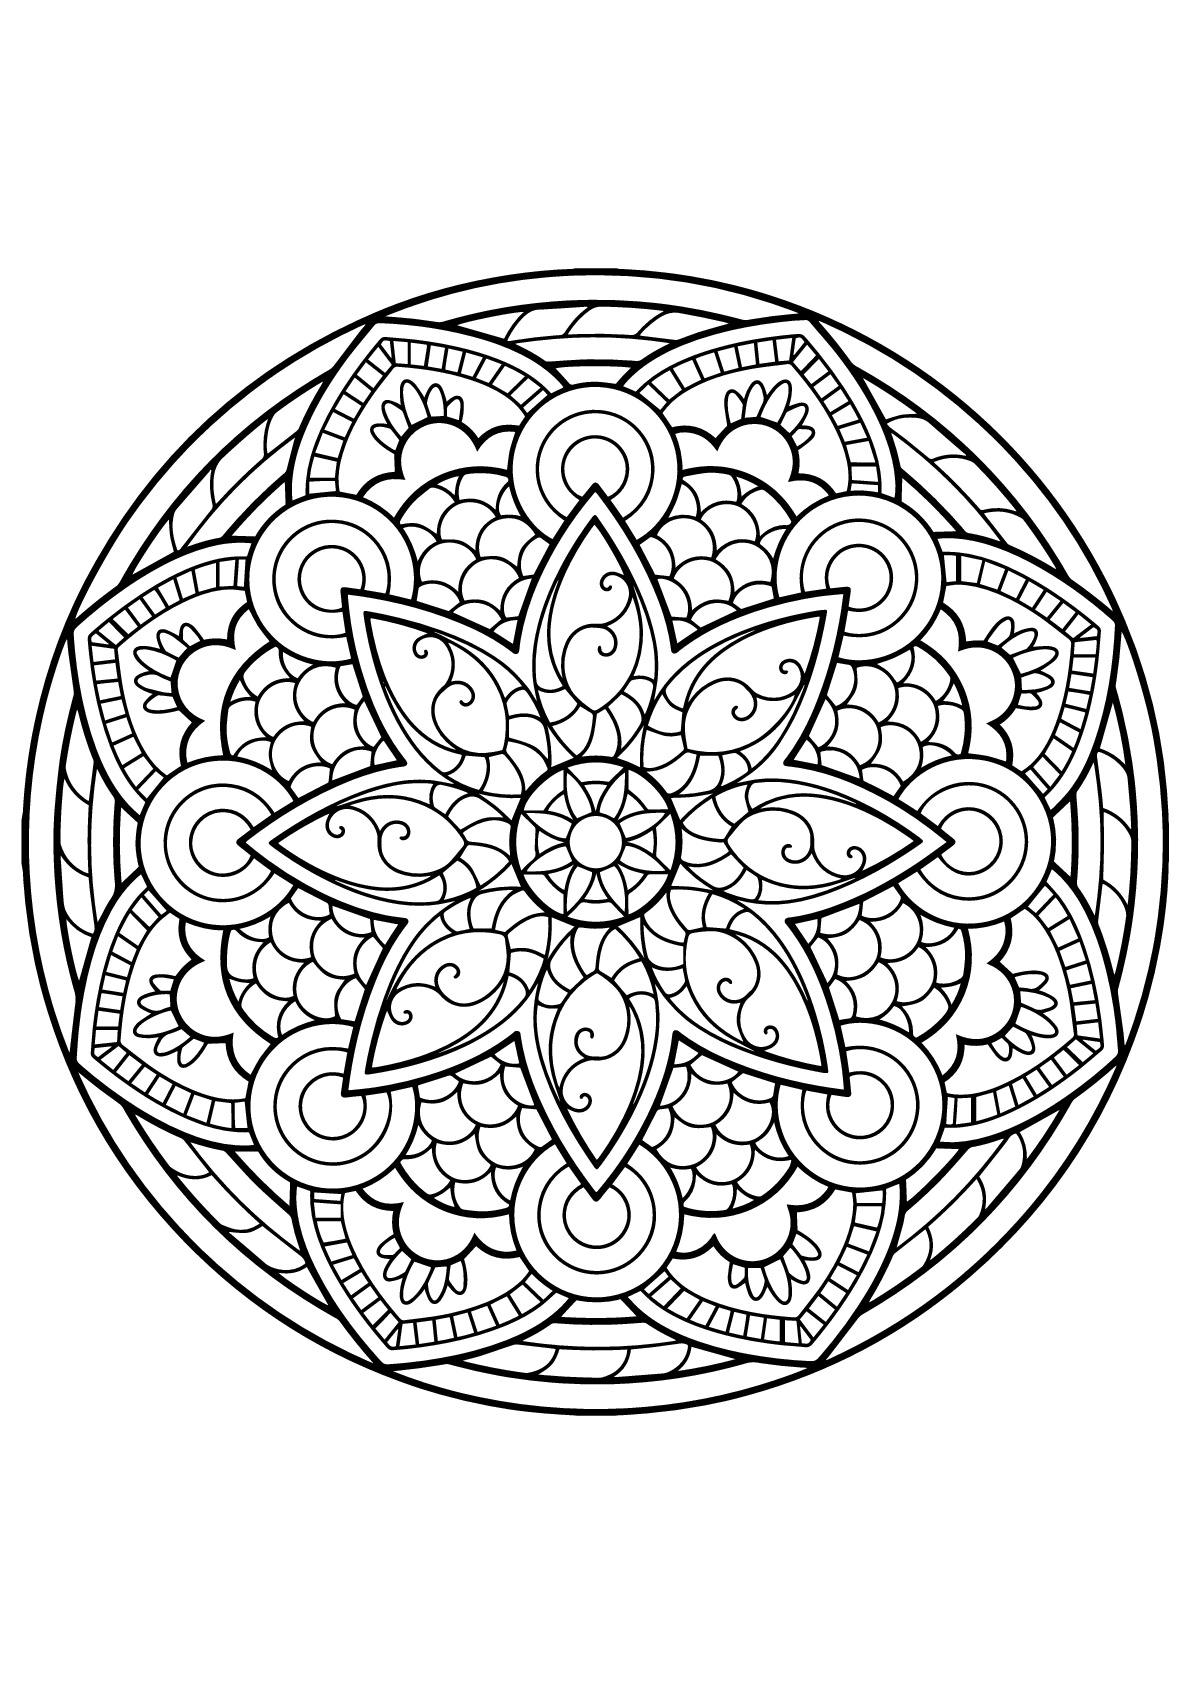 Mandala original do Livro de colorir grátis para adultos